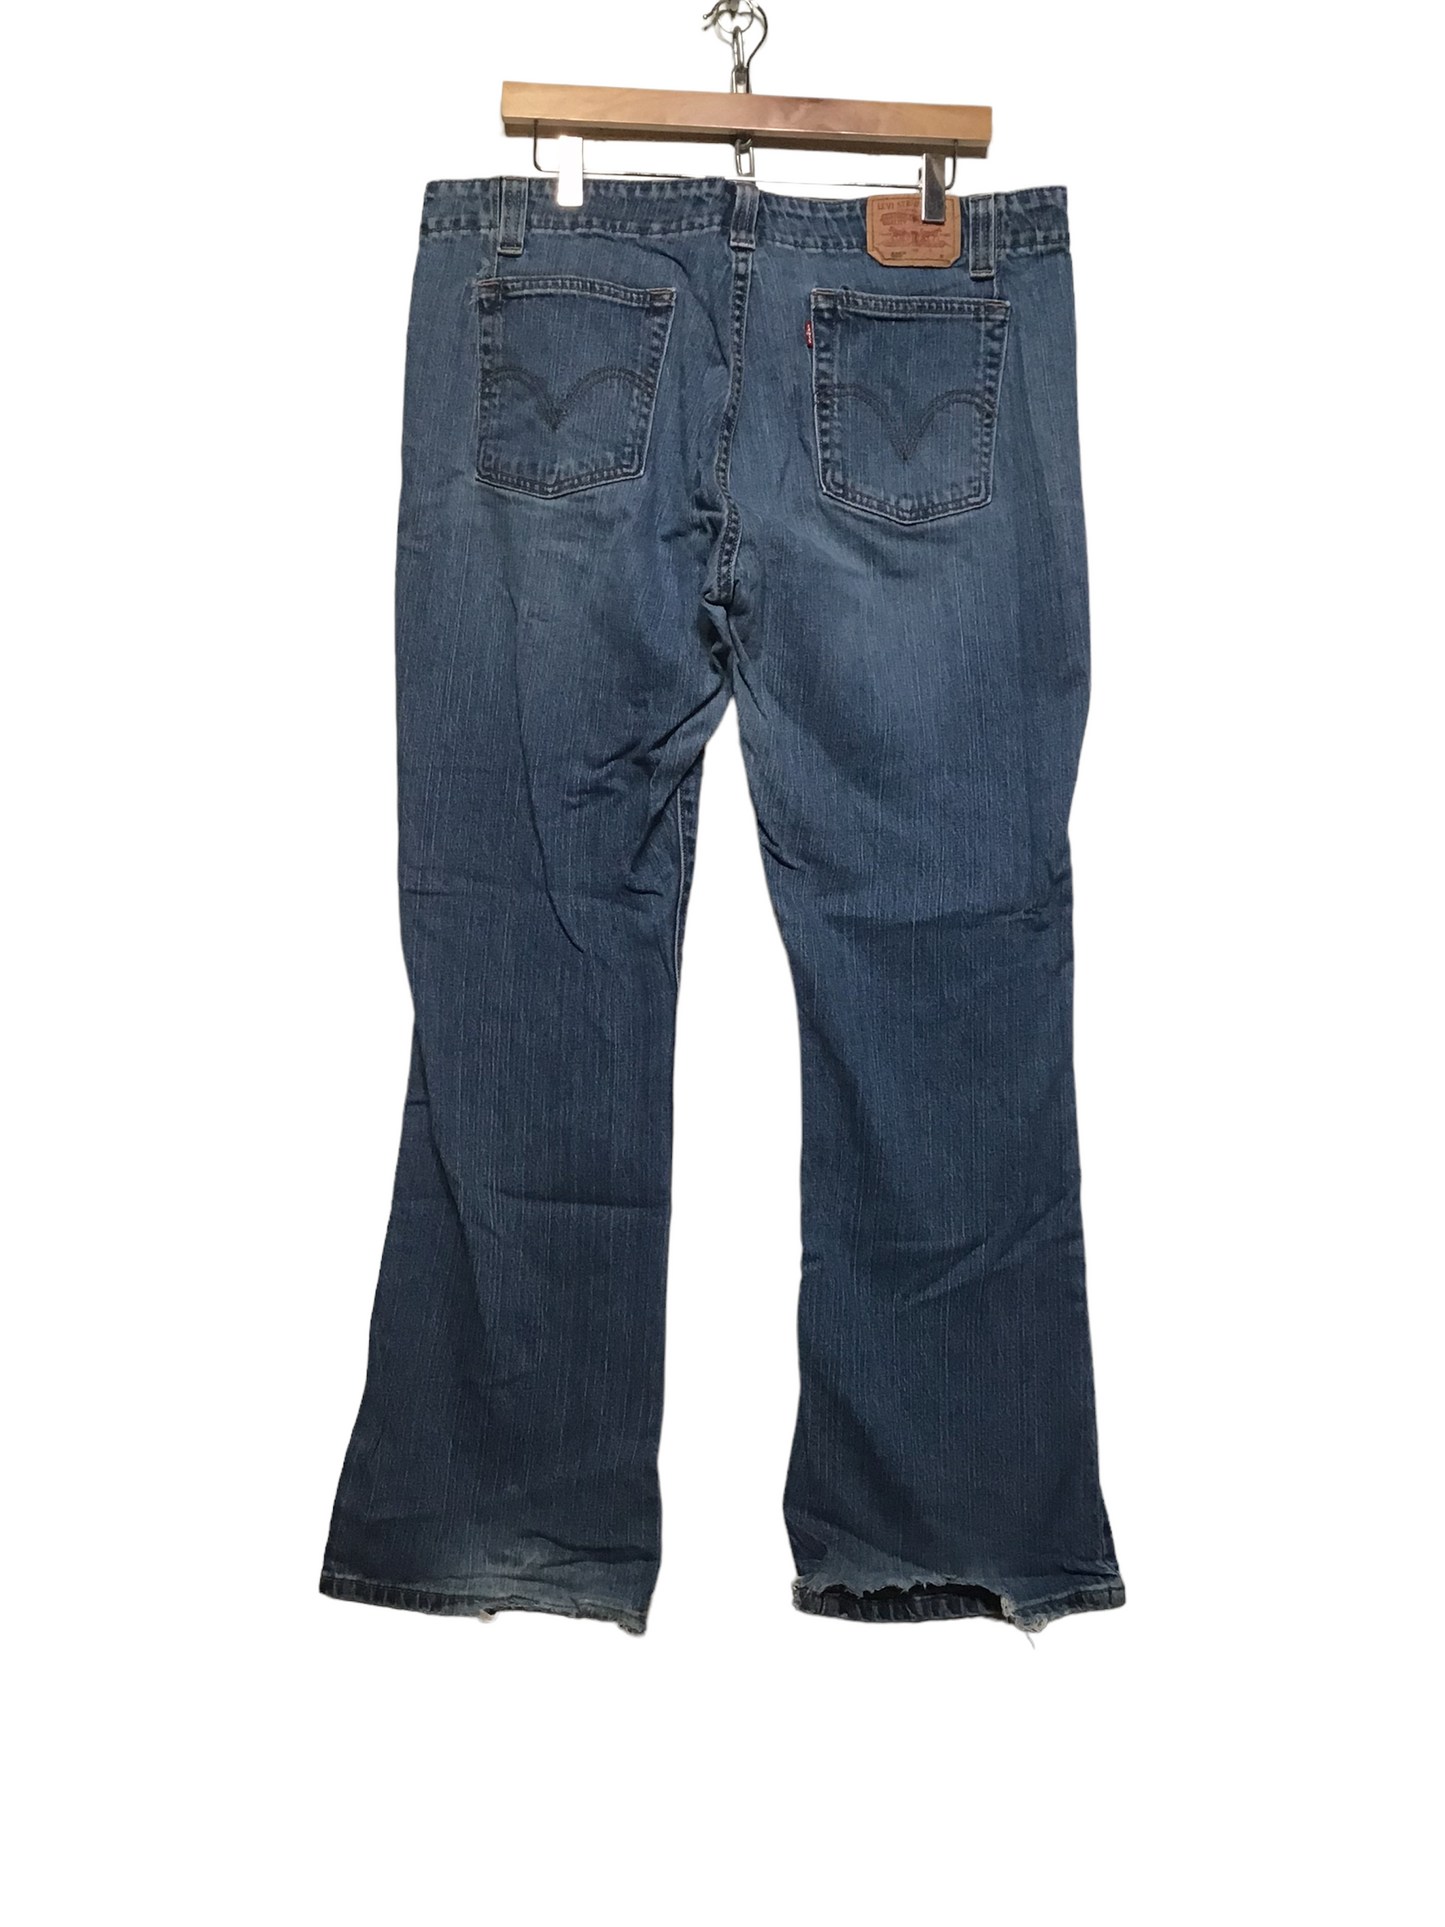 Levi 525 Jeans (38X32)